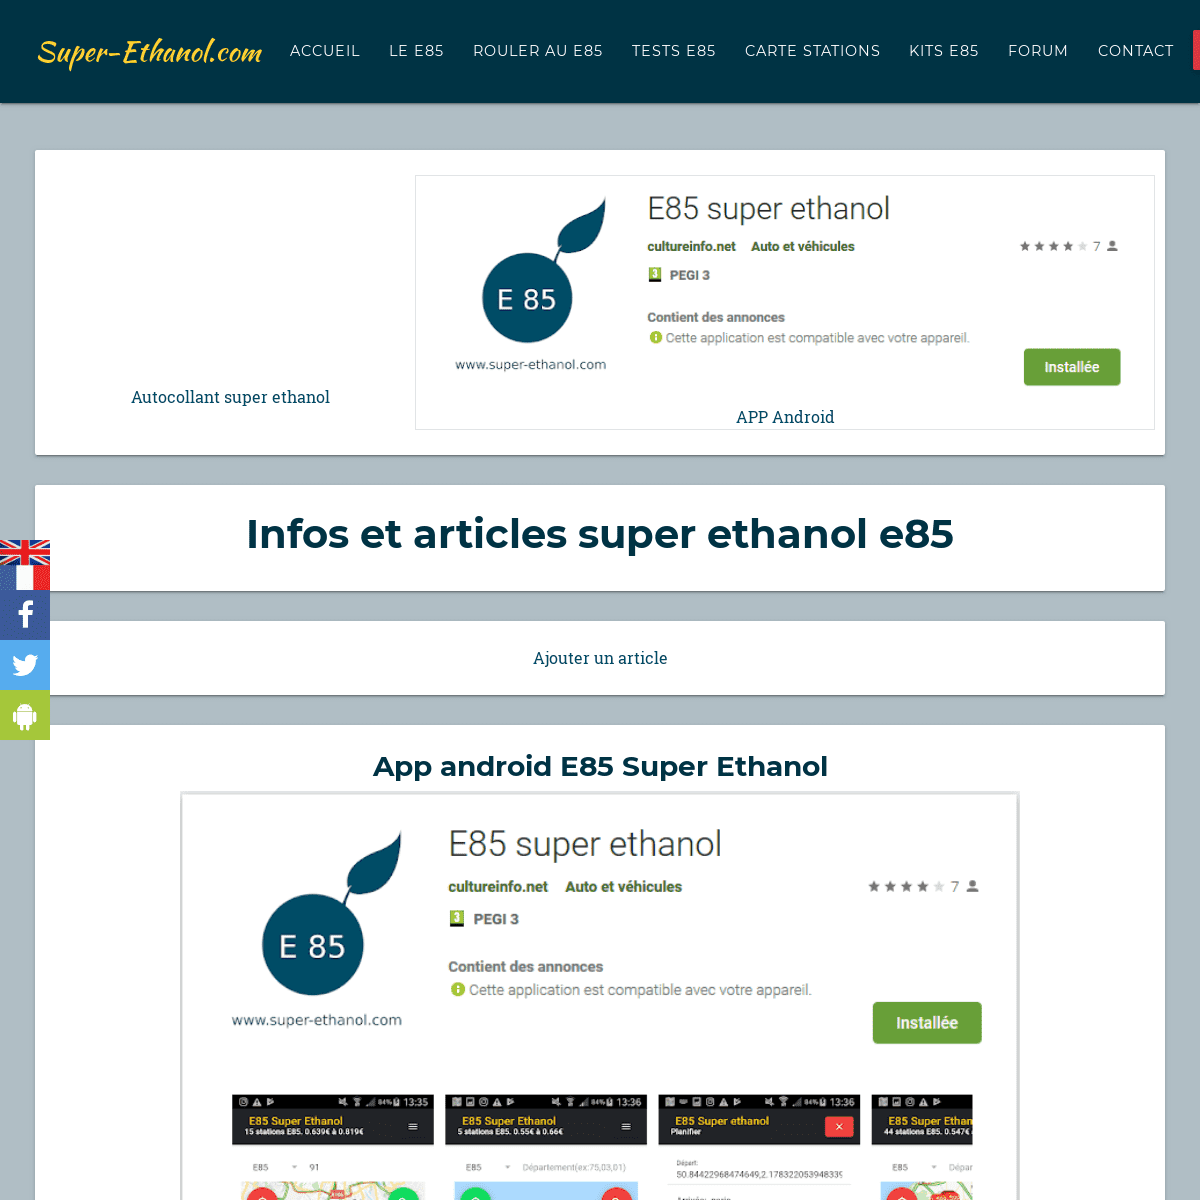 A complete backup of super-ethanol.com